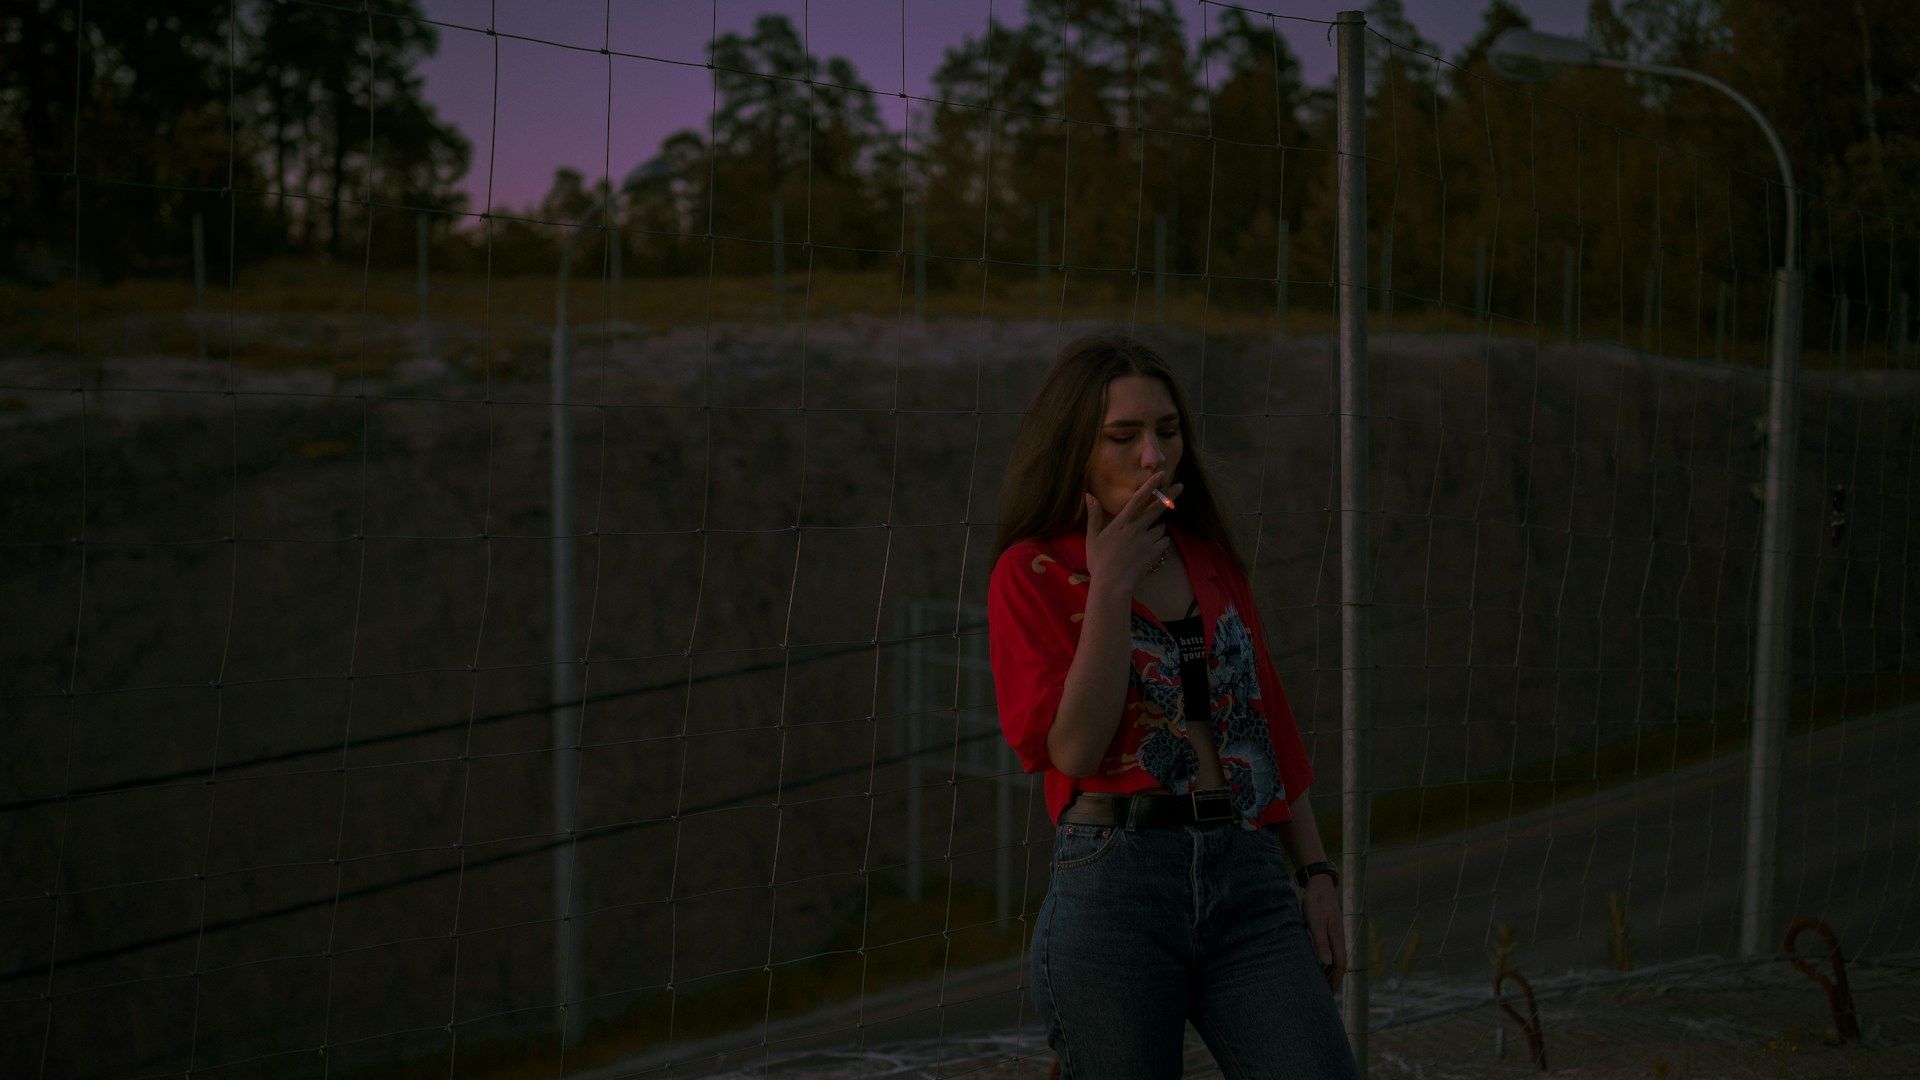 femme fumant une cigarette dan sla nuit - Photo de Maksim Istomin sur https://unsplash.com/fr/photos/femme-en-chemise-rouge-fumant-une-cigarette-BRn2zznag98